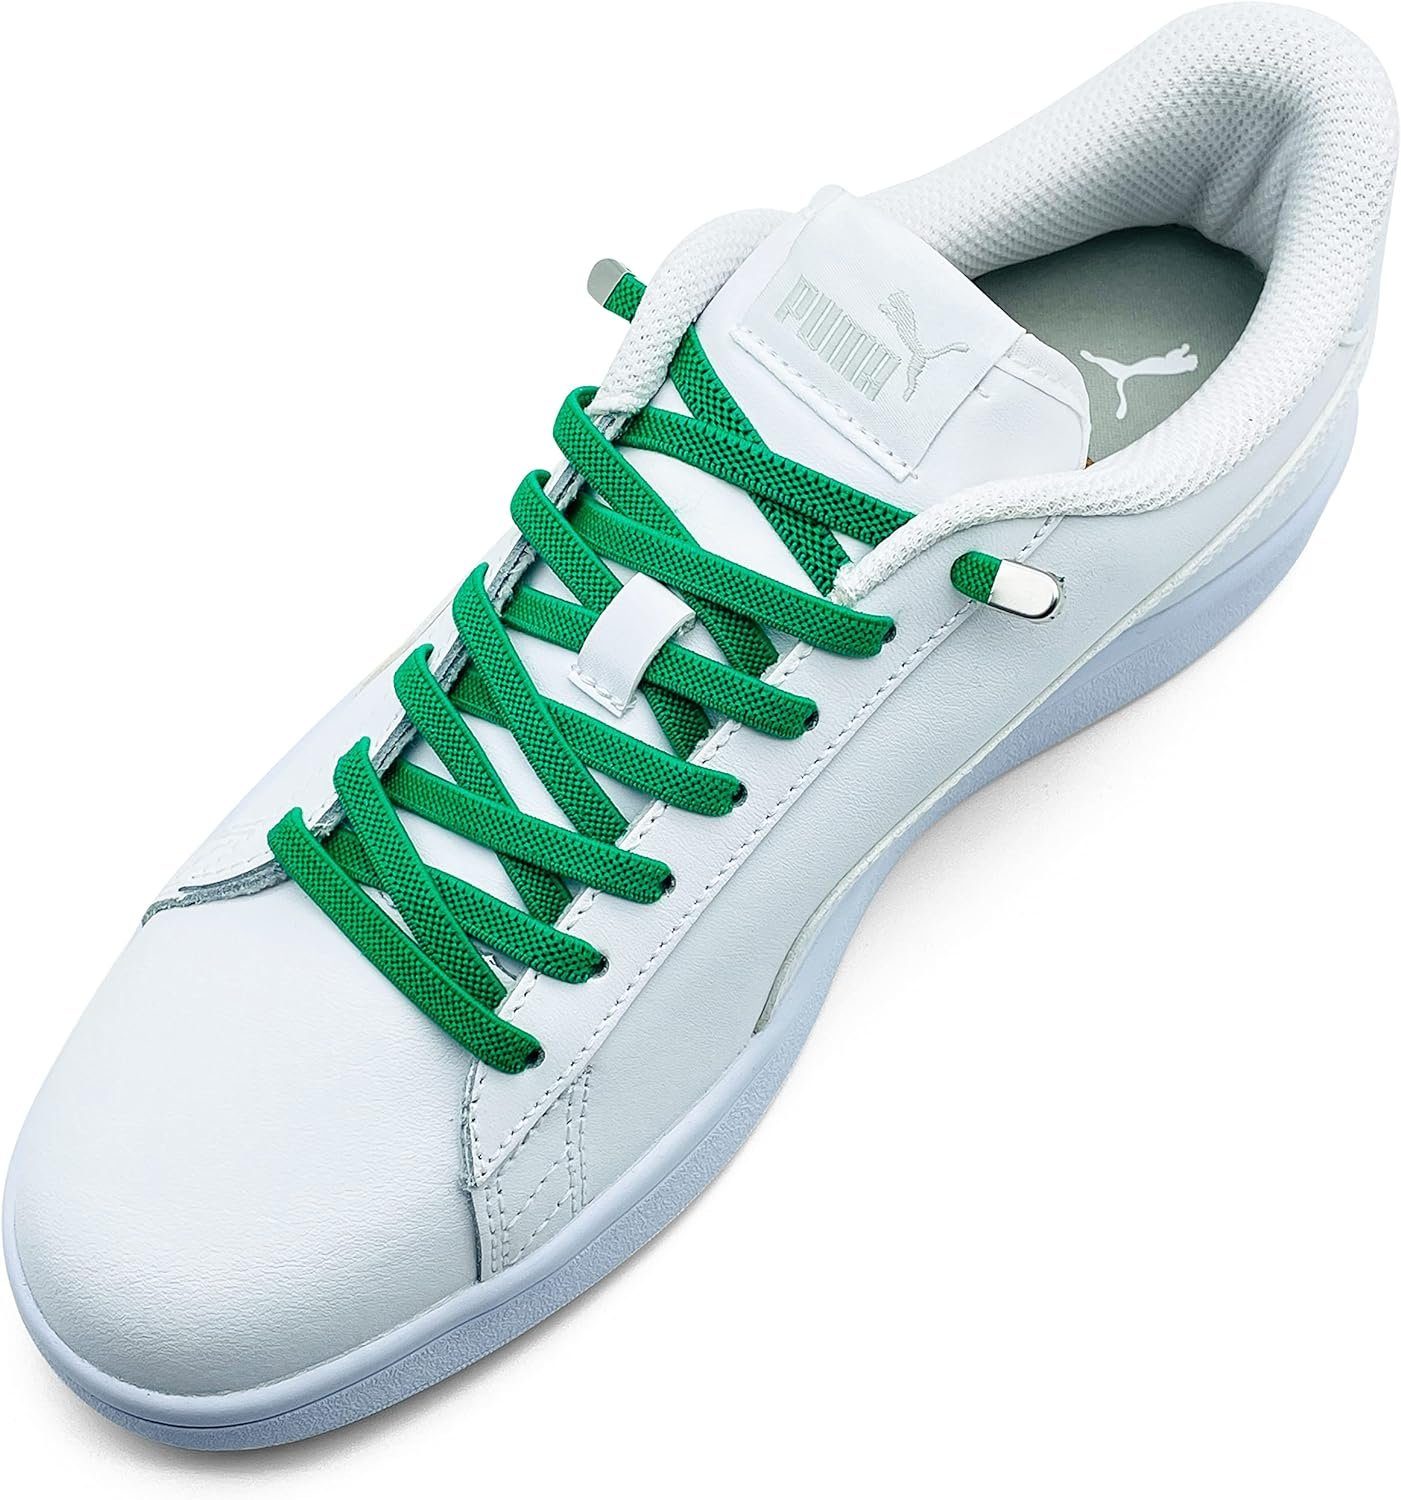 ELANOX Schnürsenkel 4 Stück für 2 Paar Schuhe elastische Schnürsenkel mit Clips, inkl. Enden (Clips) - 8 St. in silber grün